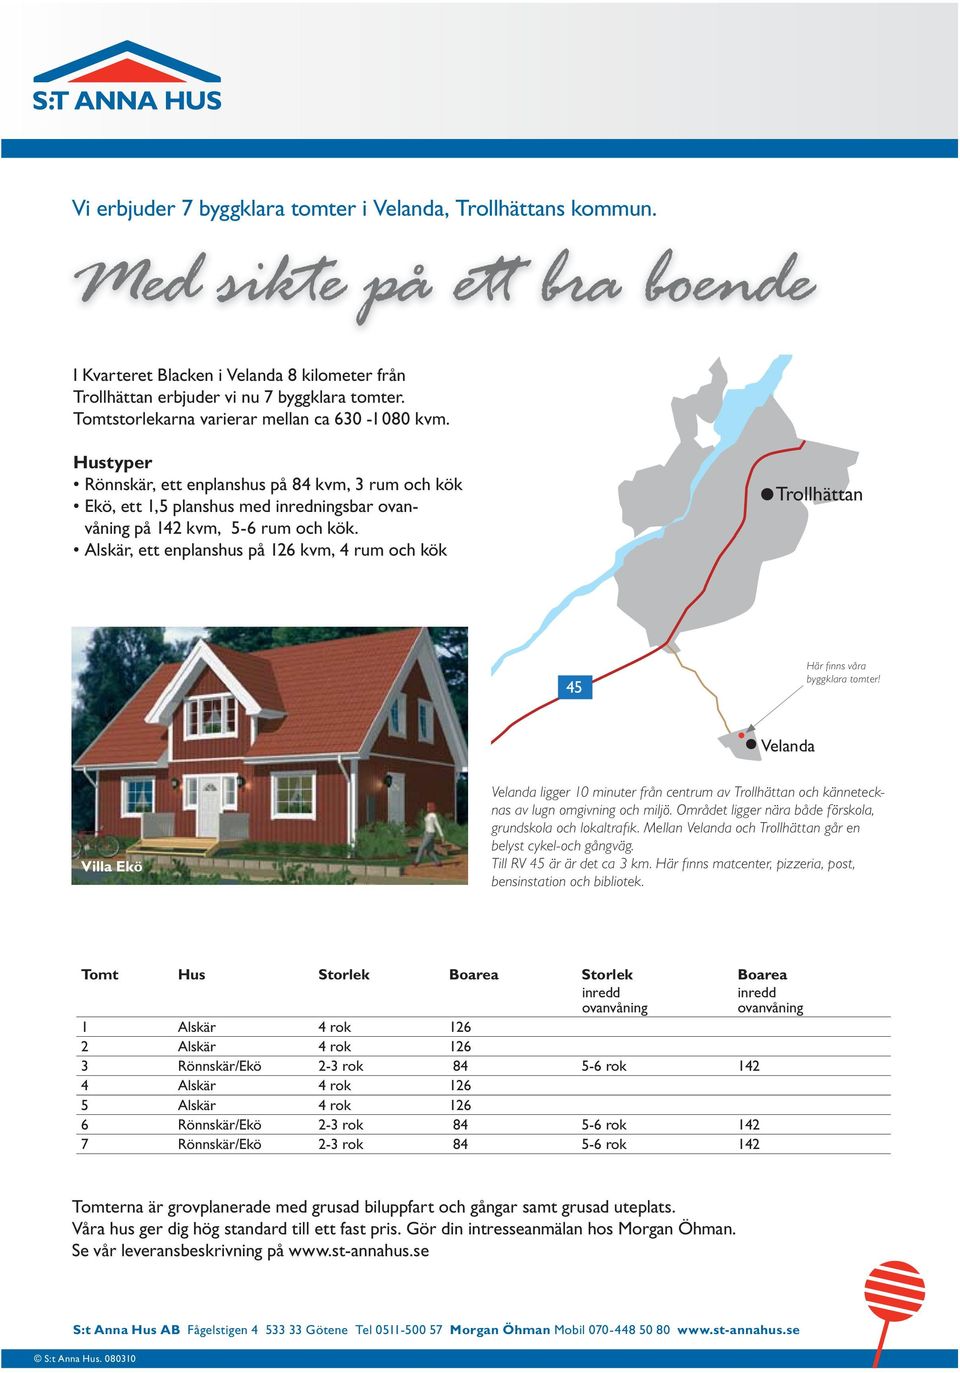 Alskär, ett enplanshus på 126 kvm, 4 rum och kök Trollhättan 45 Här fi nns våra byggklara tomter!